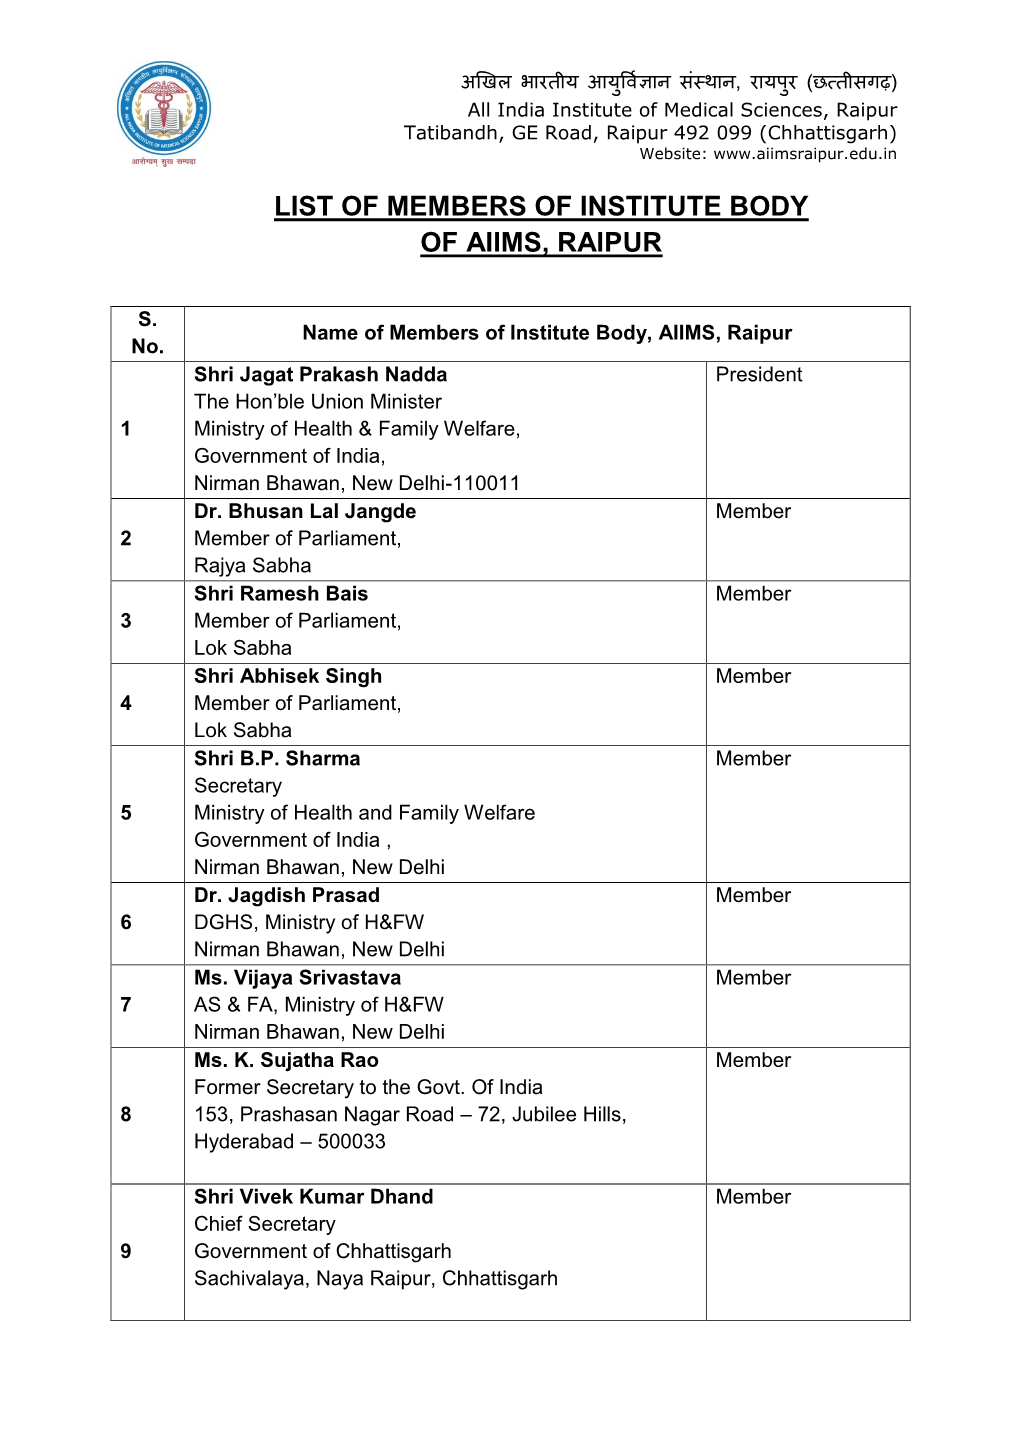 List of Members of Institute Body of Aiims, Raipur